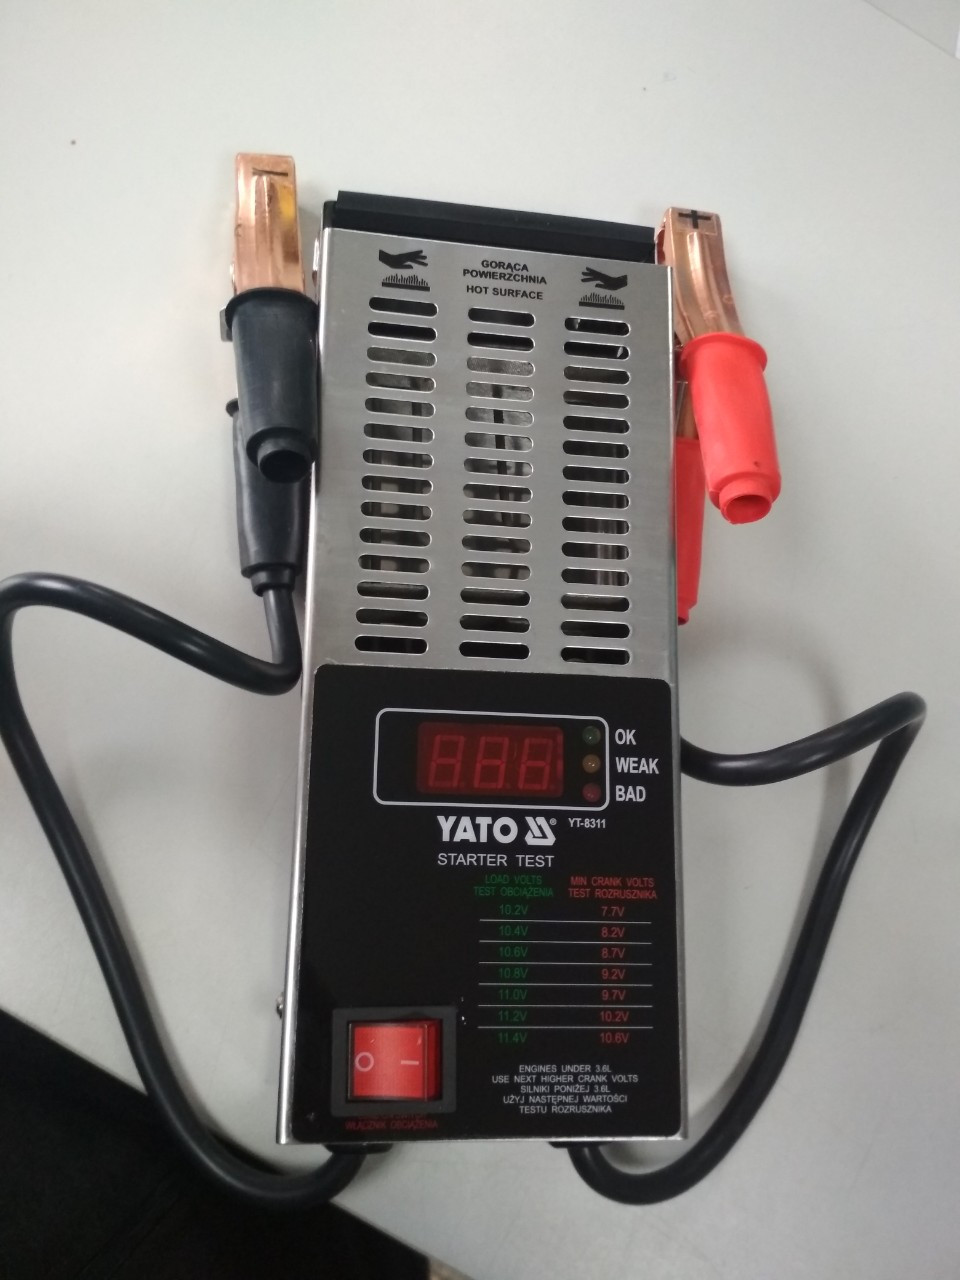  АКК батарей (Нагрузочная вилка) цифровой Yato YT-8311:  .